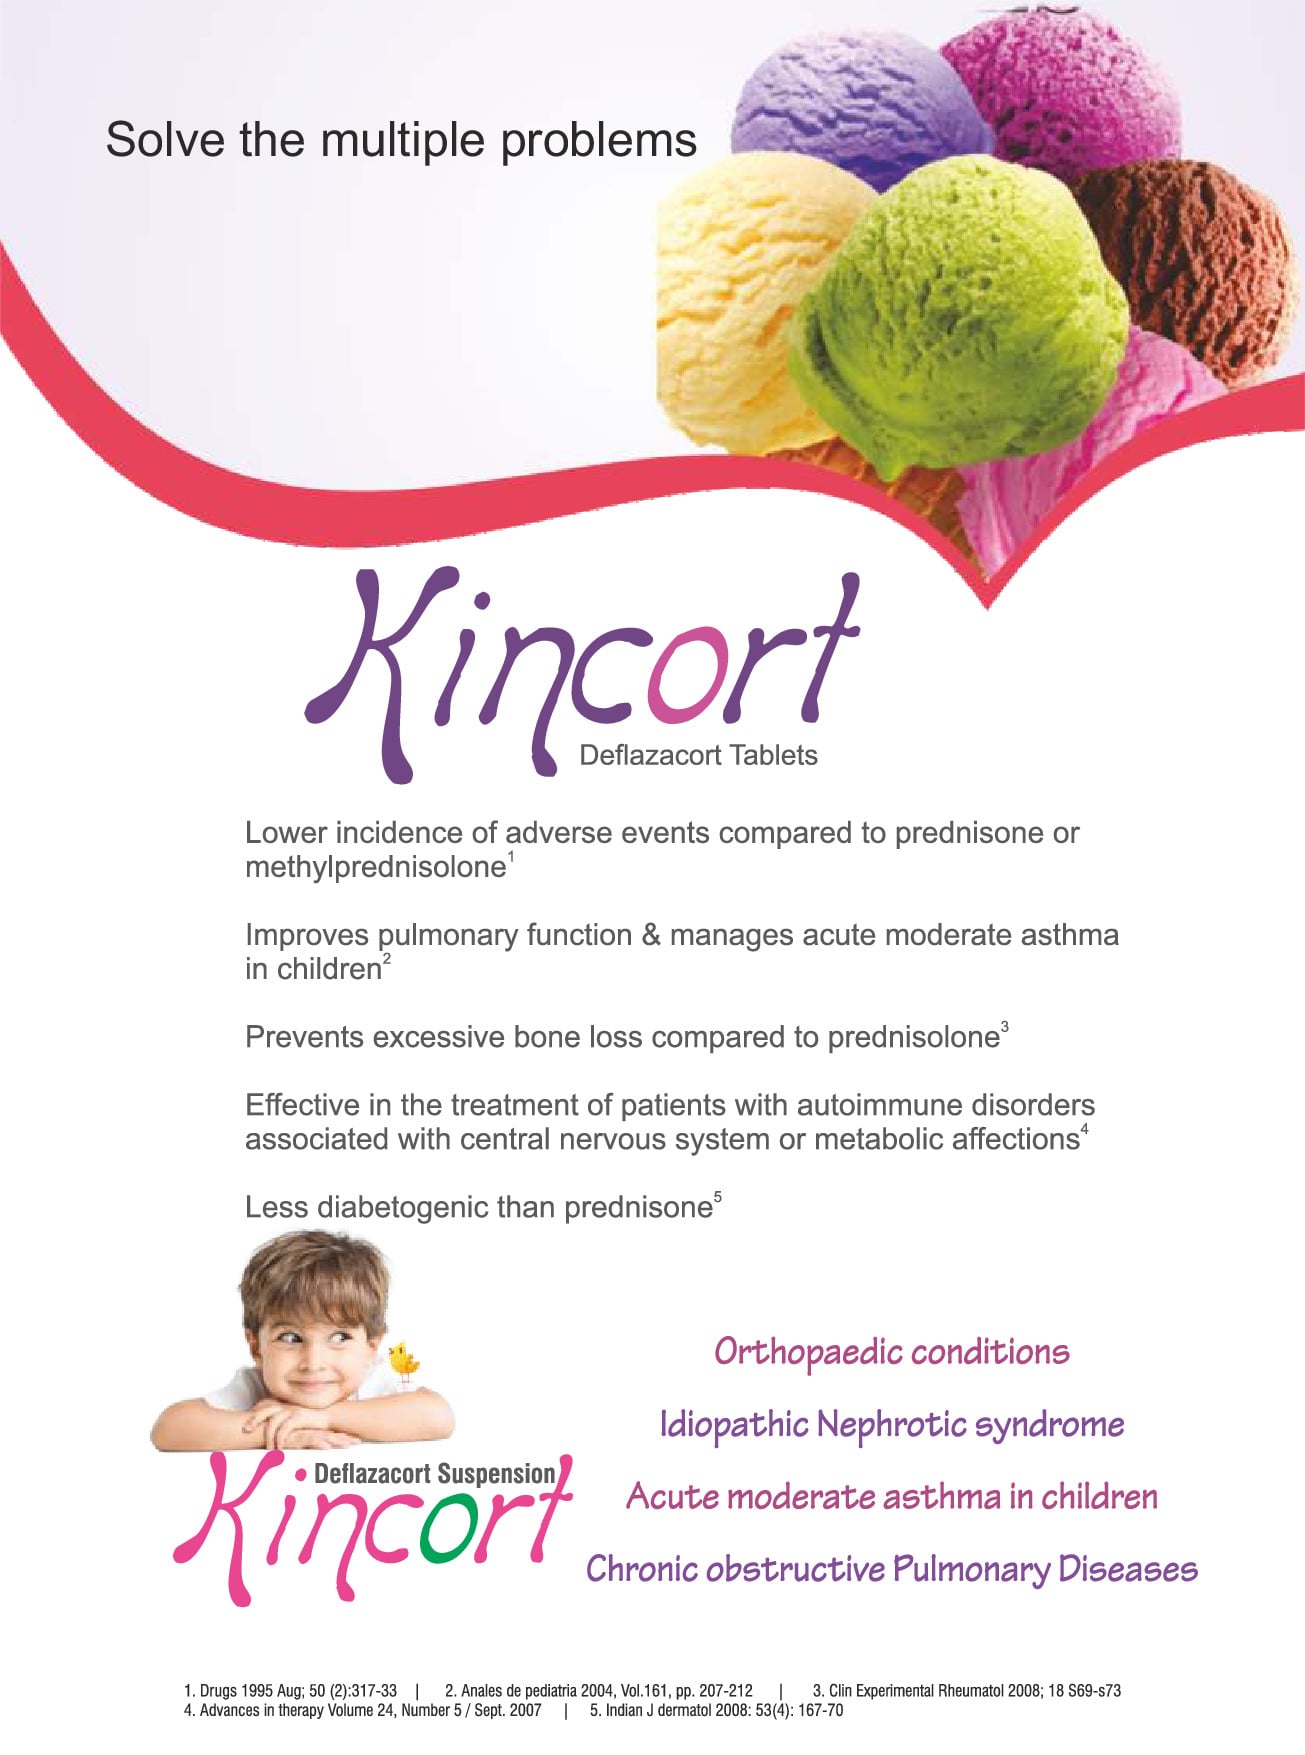 Kincort